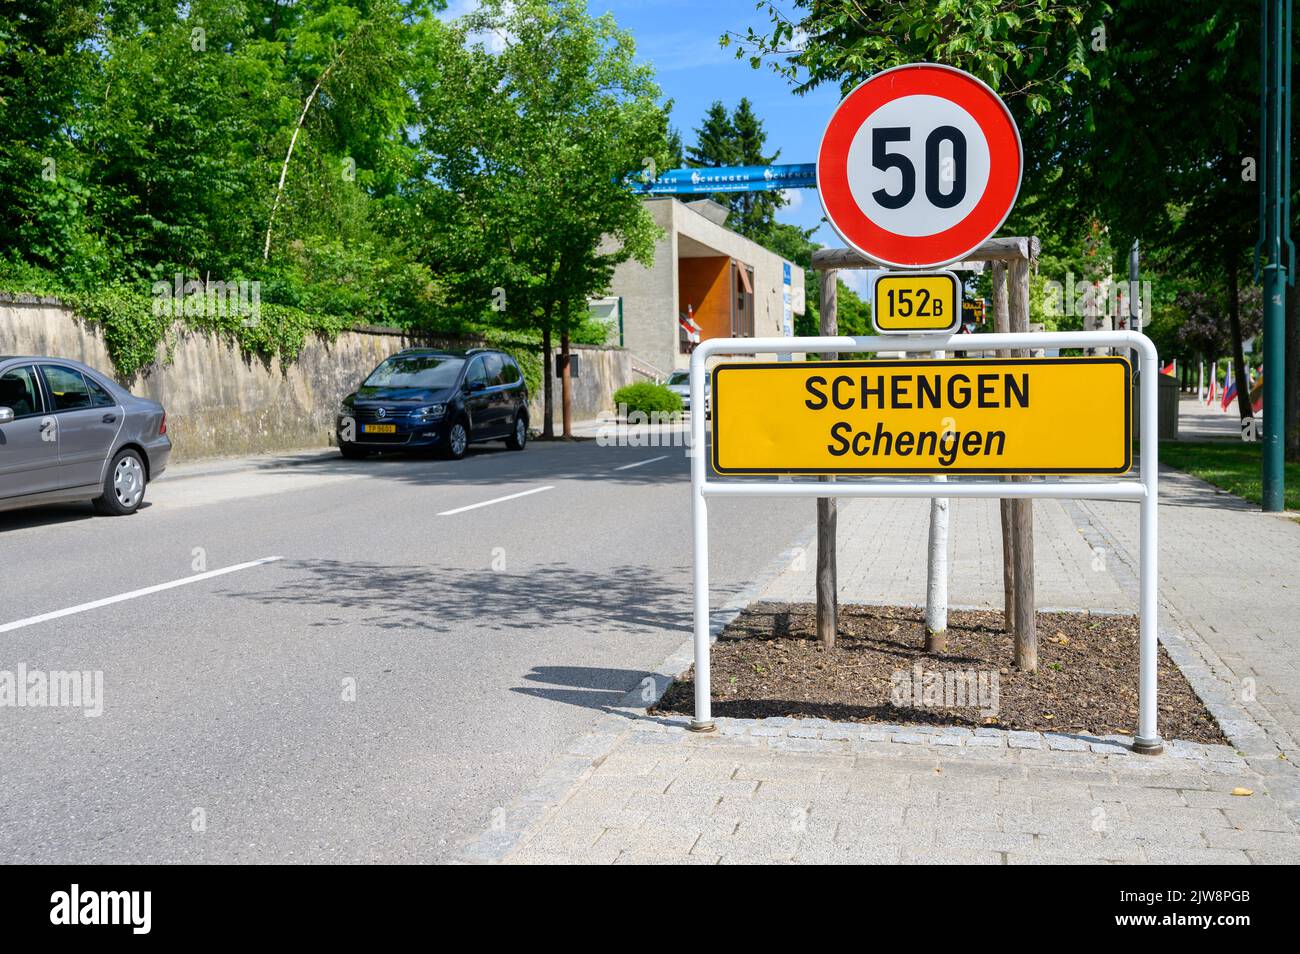 Schengen, Luxemburgo, la ciudad donde se firmó el famoso Acuerdo de Schengen el 14 de junio de 1985. Foto de stock